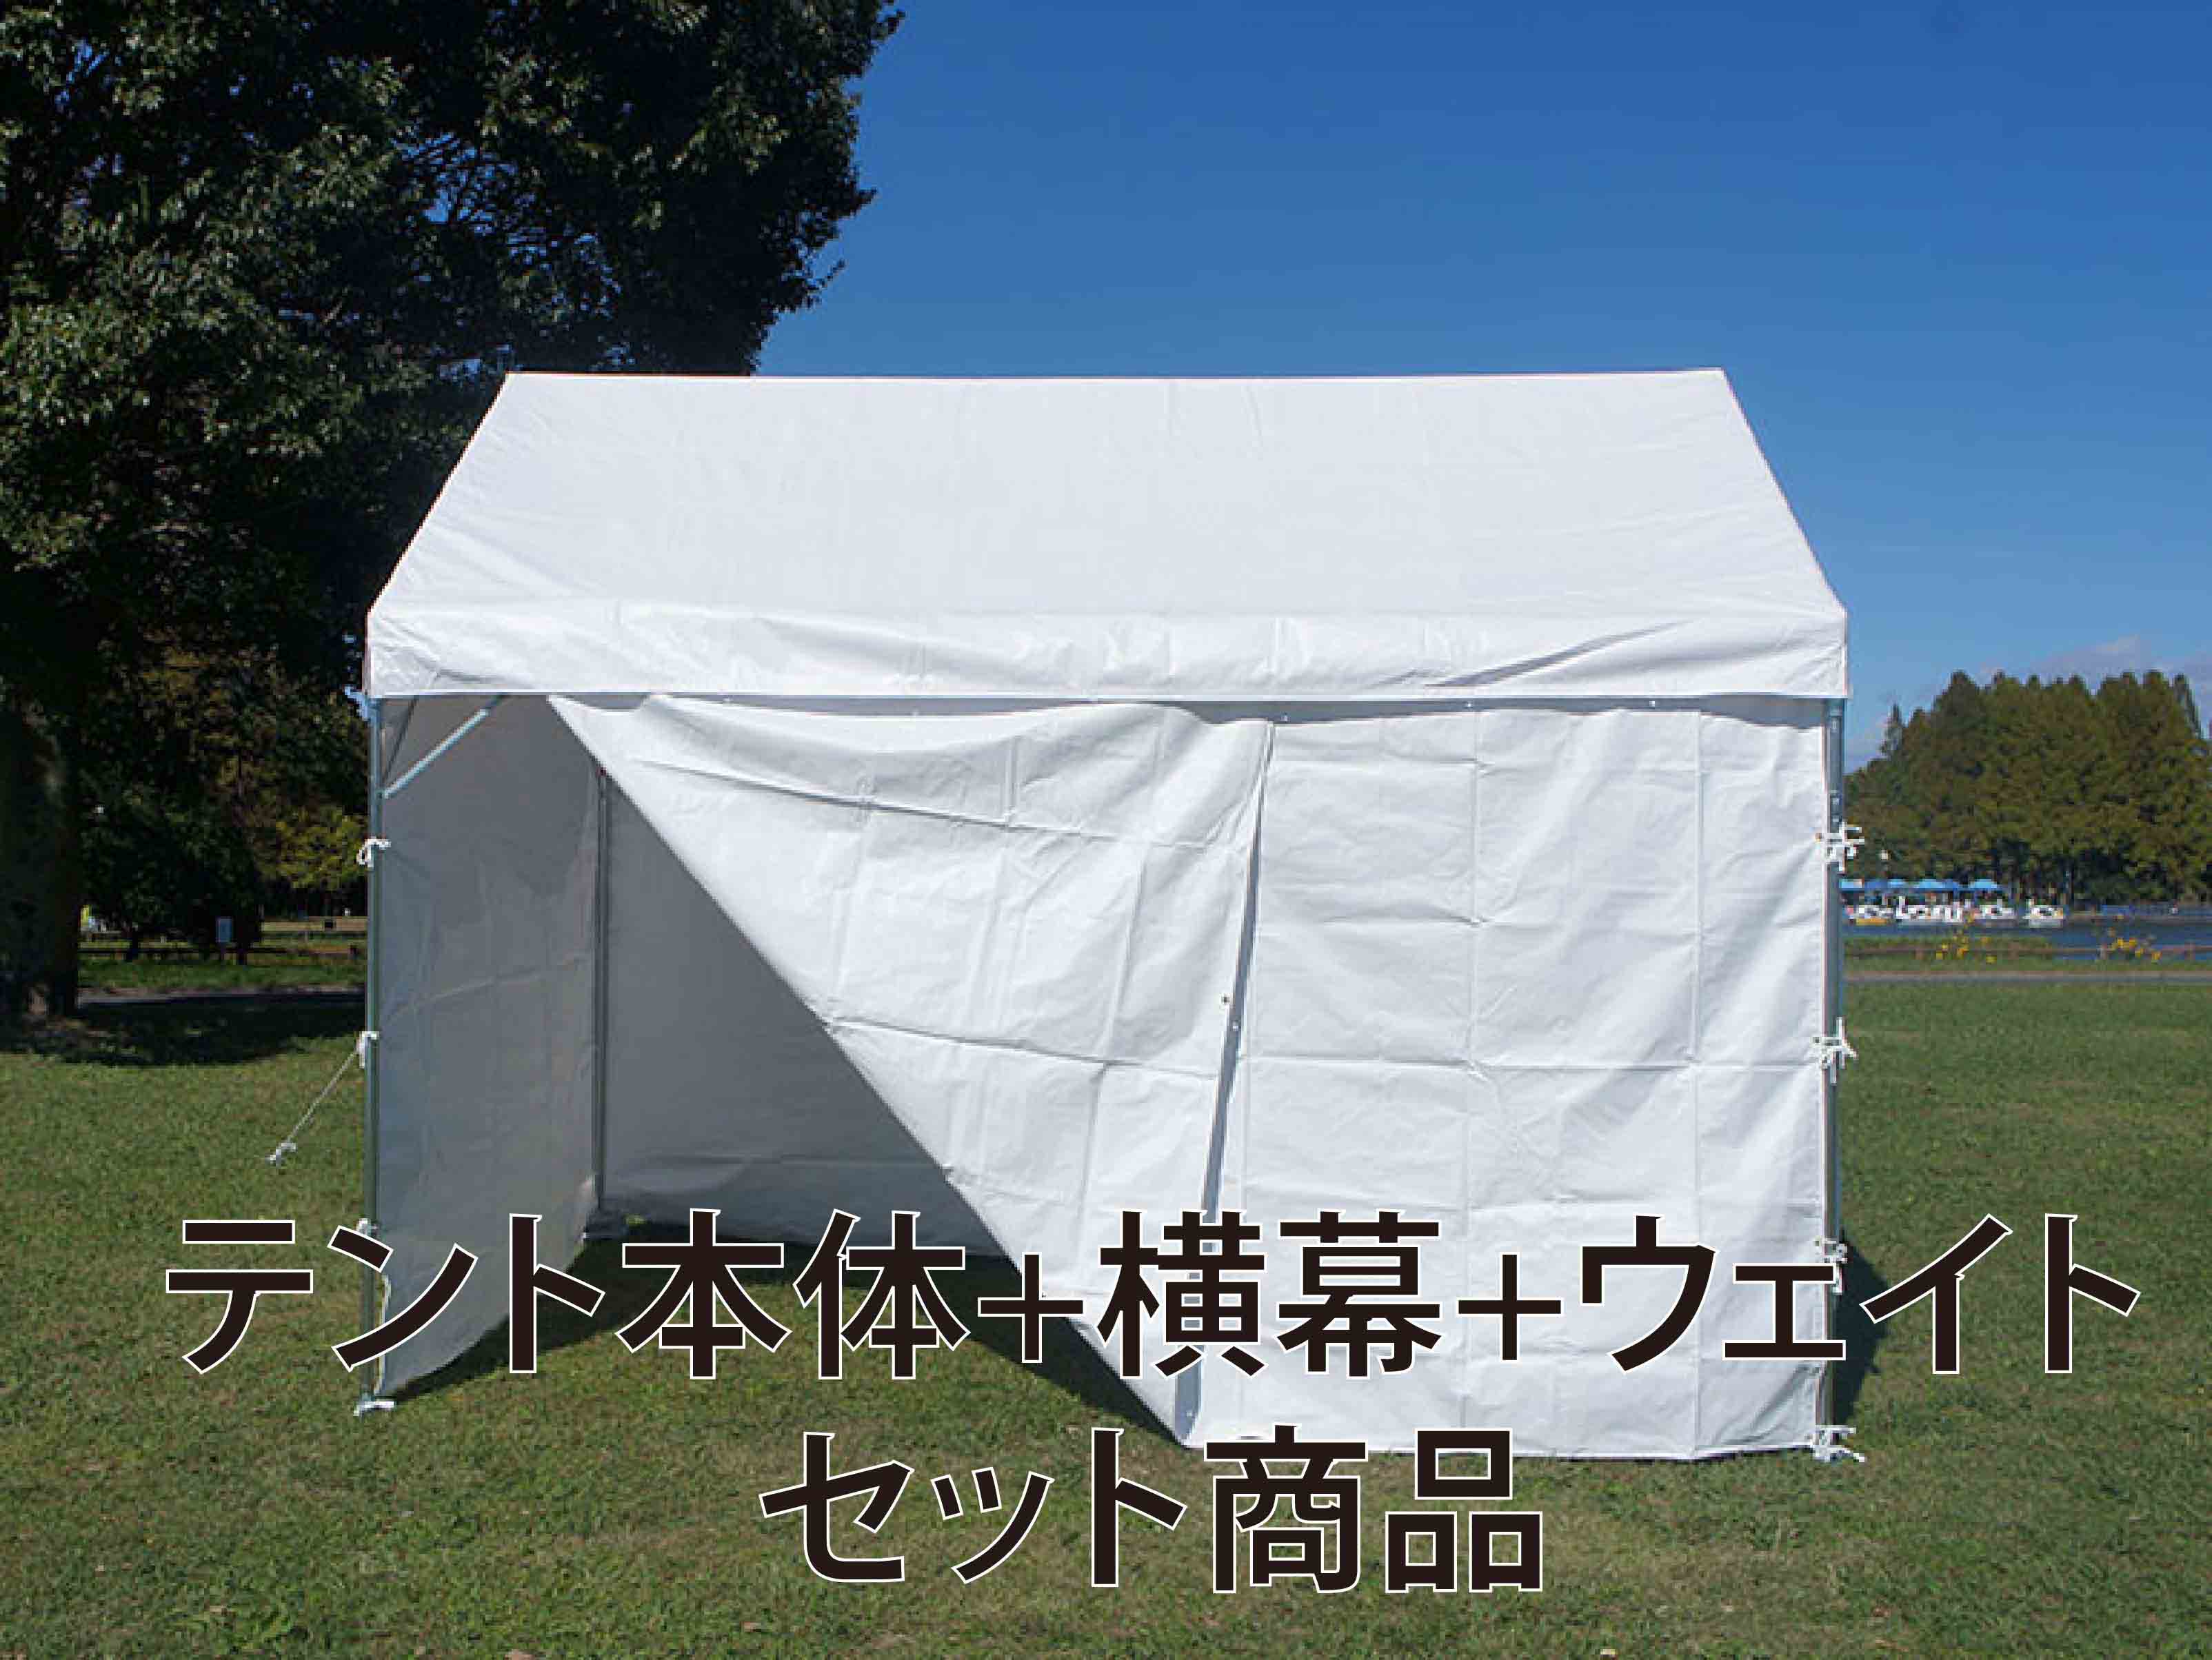 パワーパイプテント 1.5間×2間セット Tent-Market